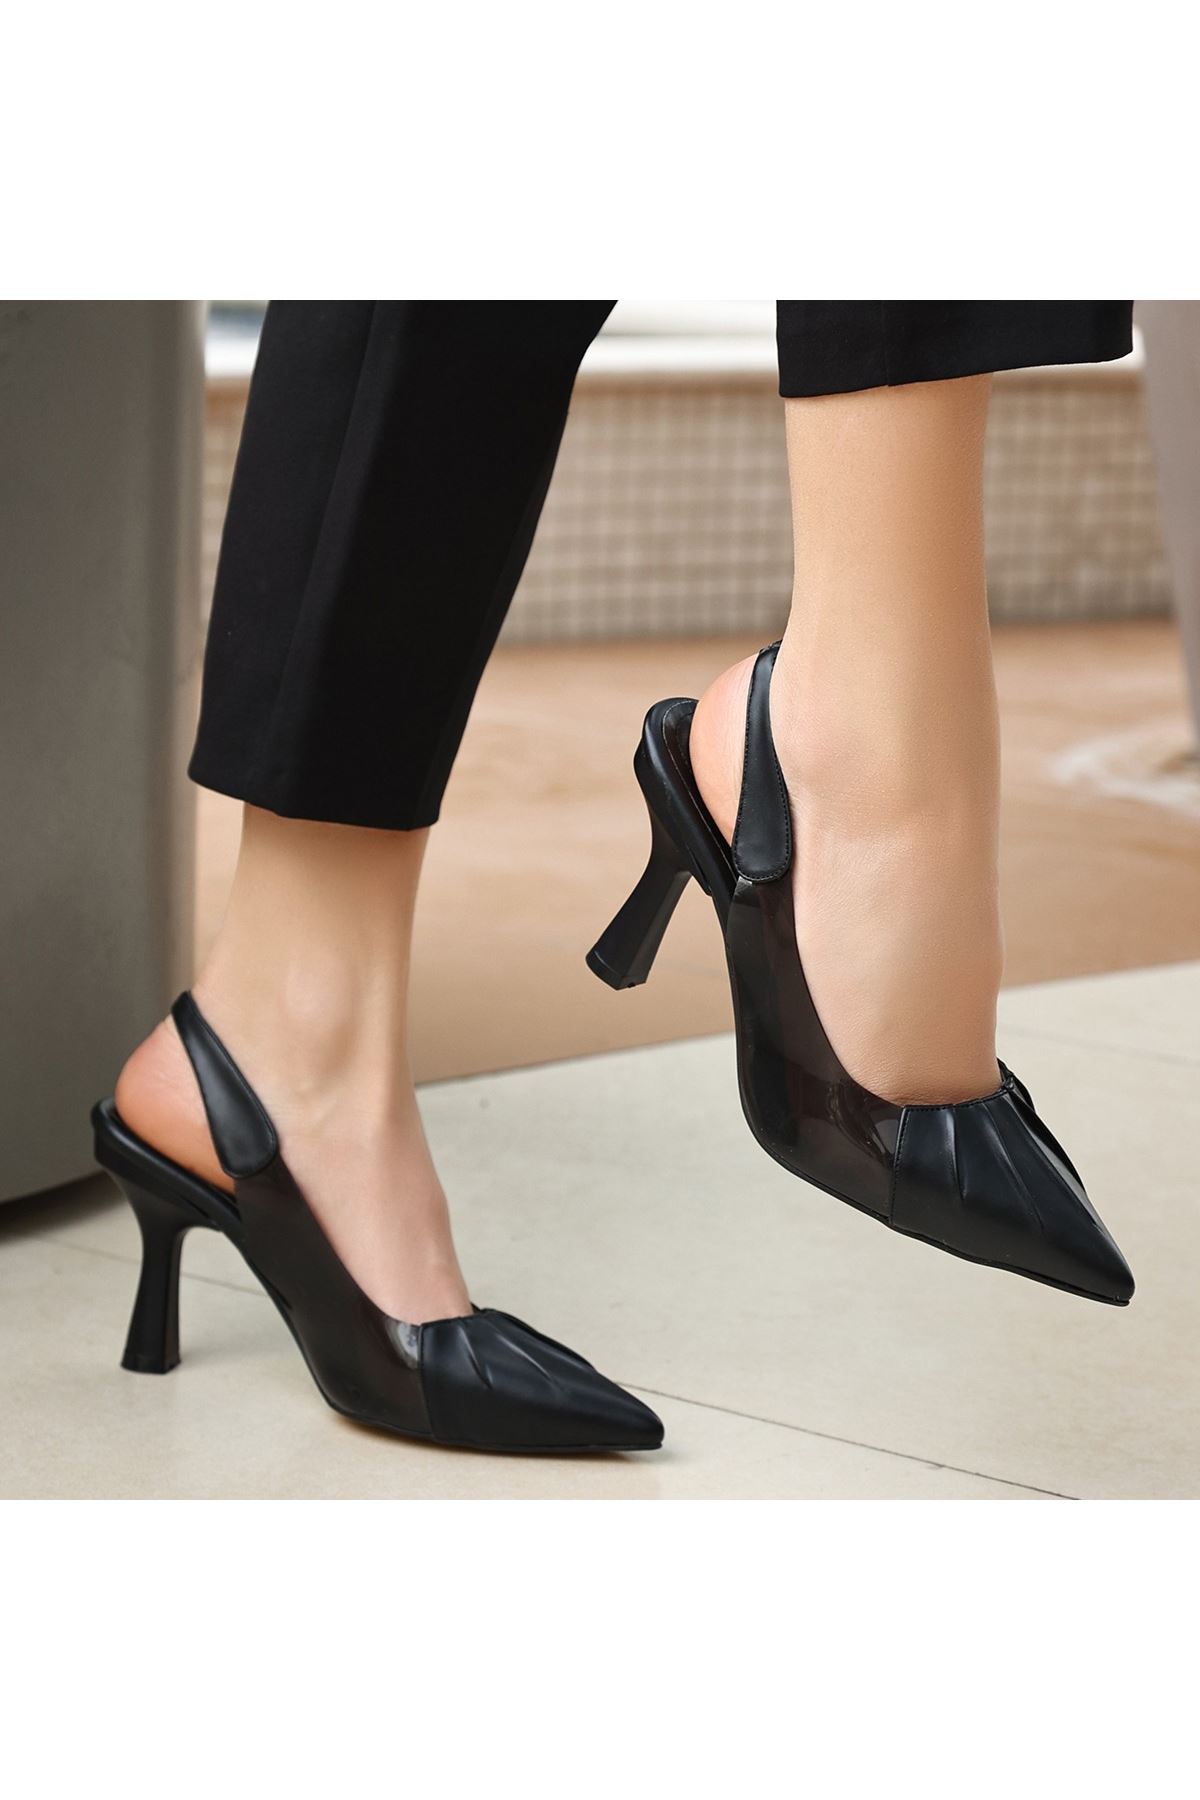 Mera Siyah Cilt Topuklu Ayakkabı